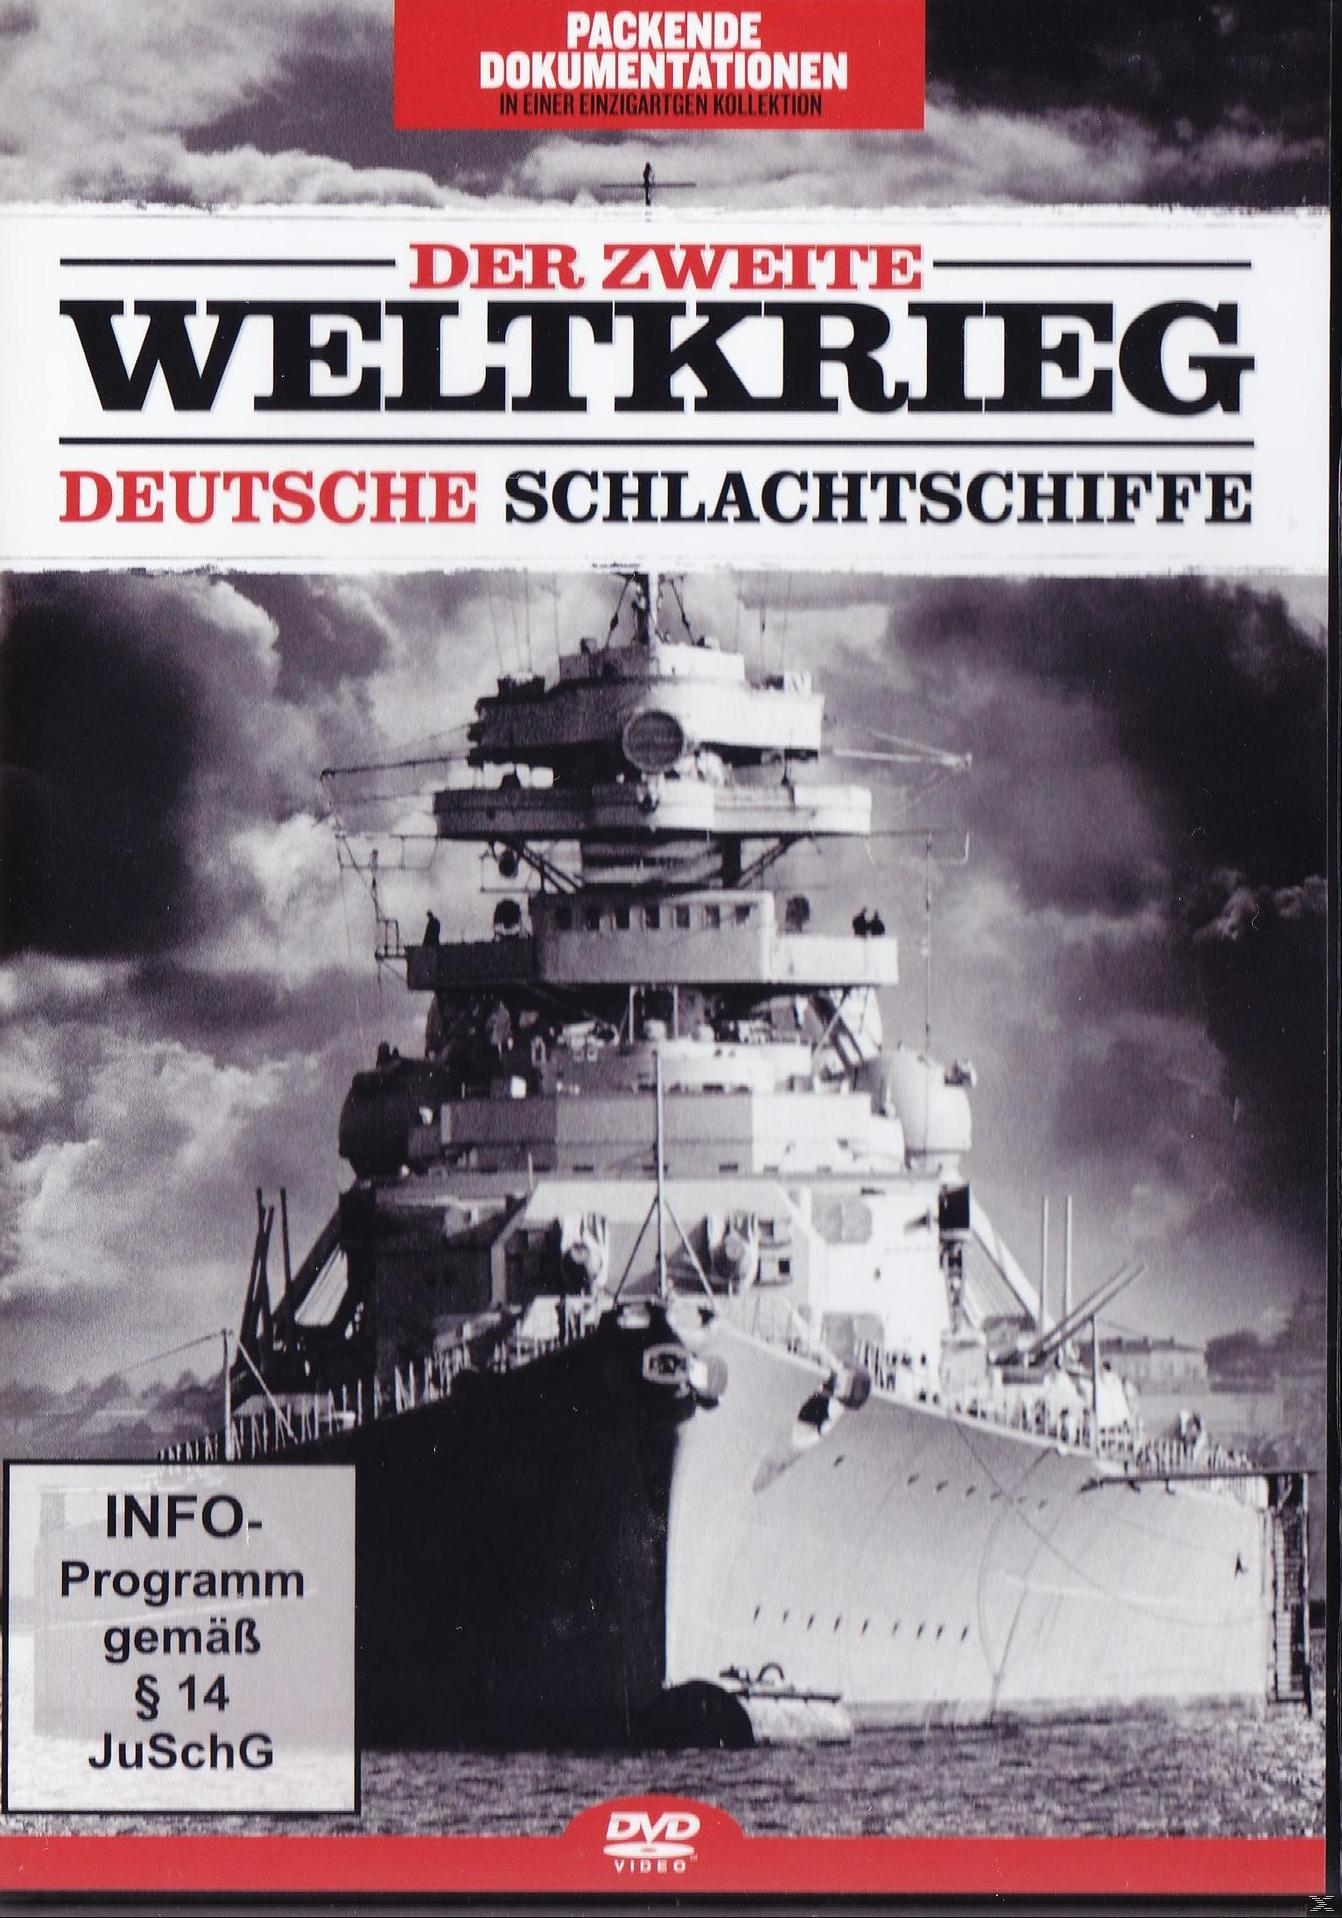 Der Zweite Weltkrieg: Schlachtschiffe Deutsche DVD